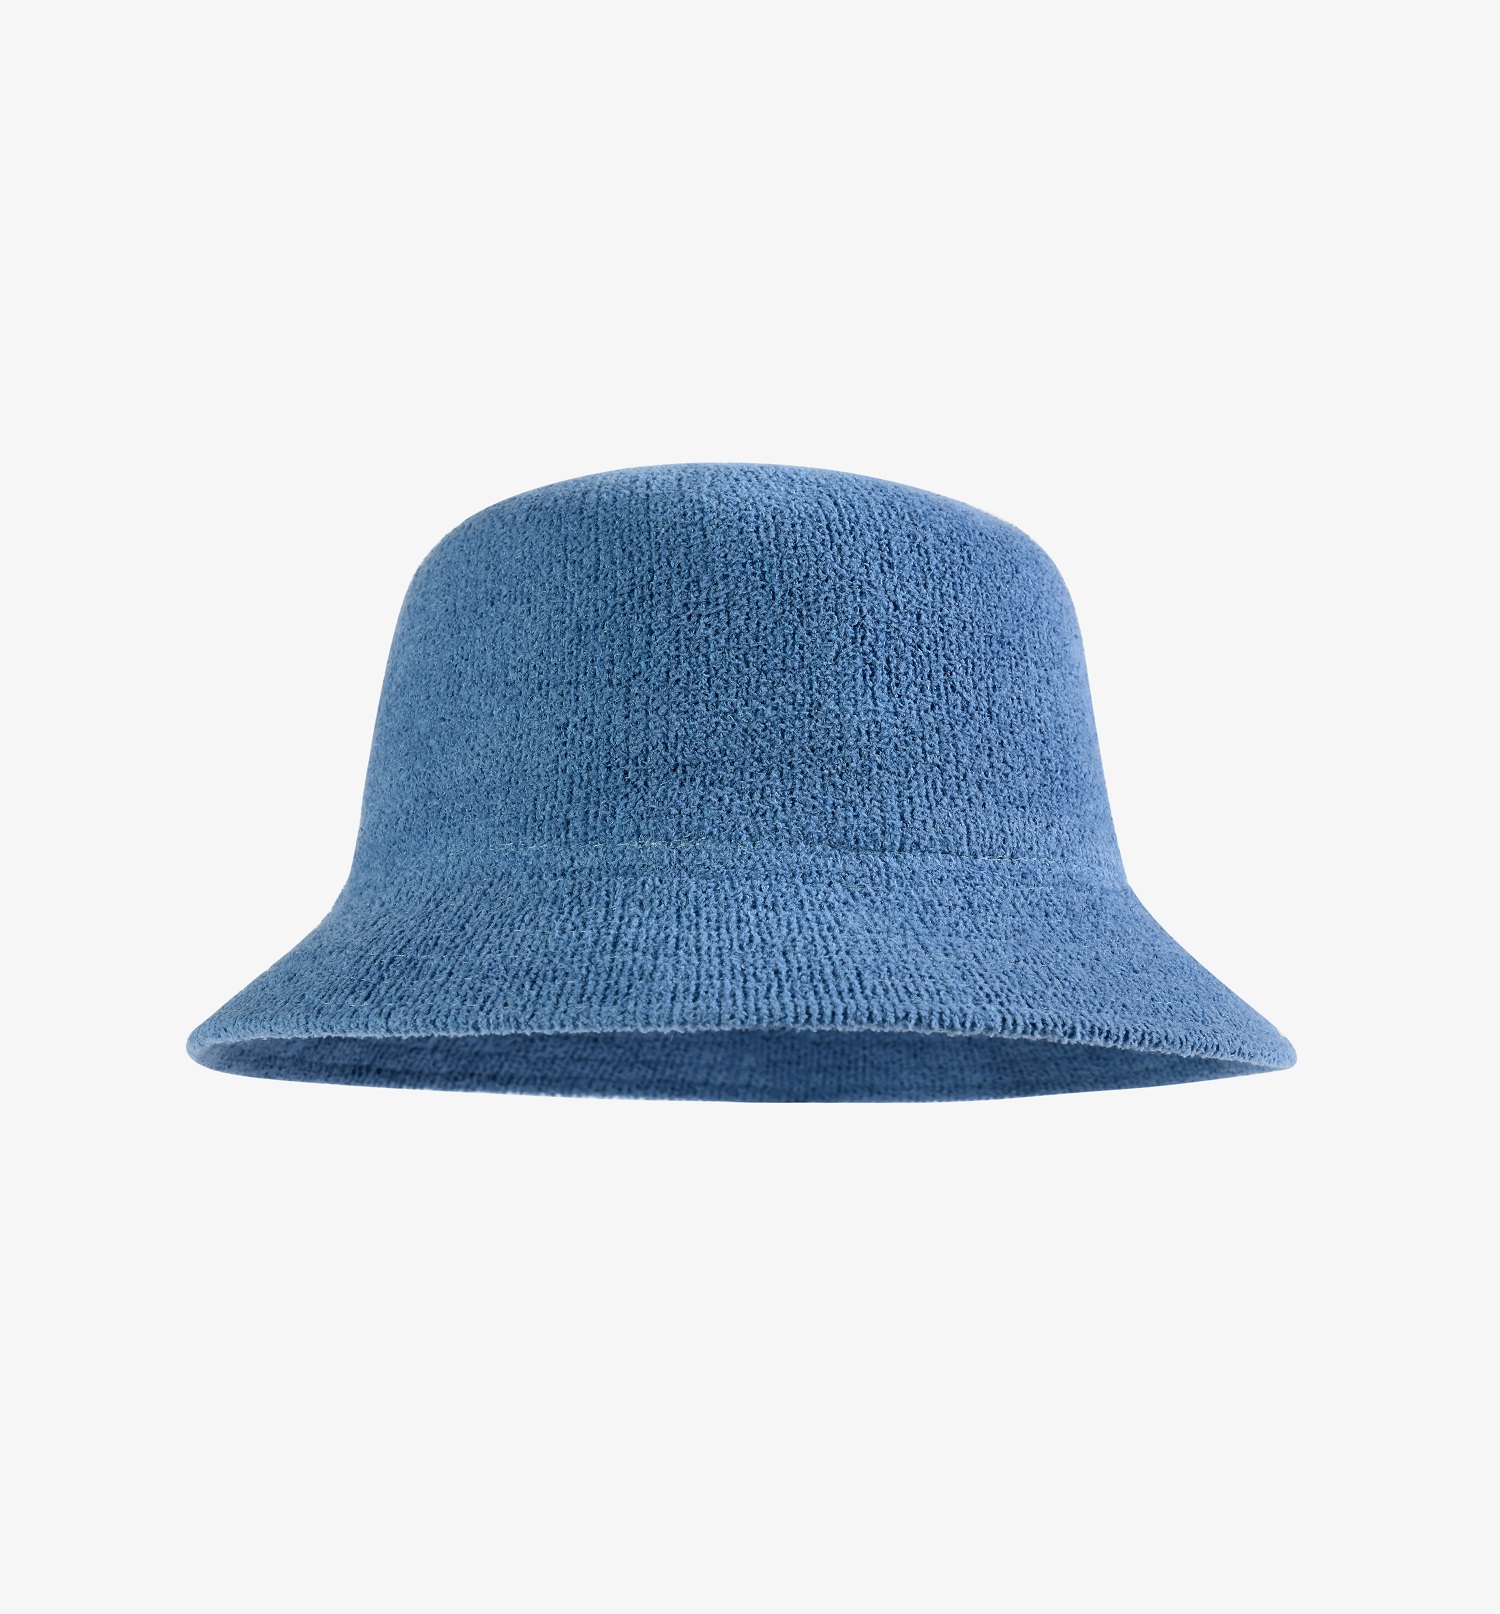 私人专属系列纯色针织盆帽